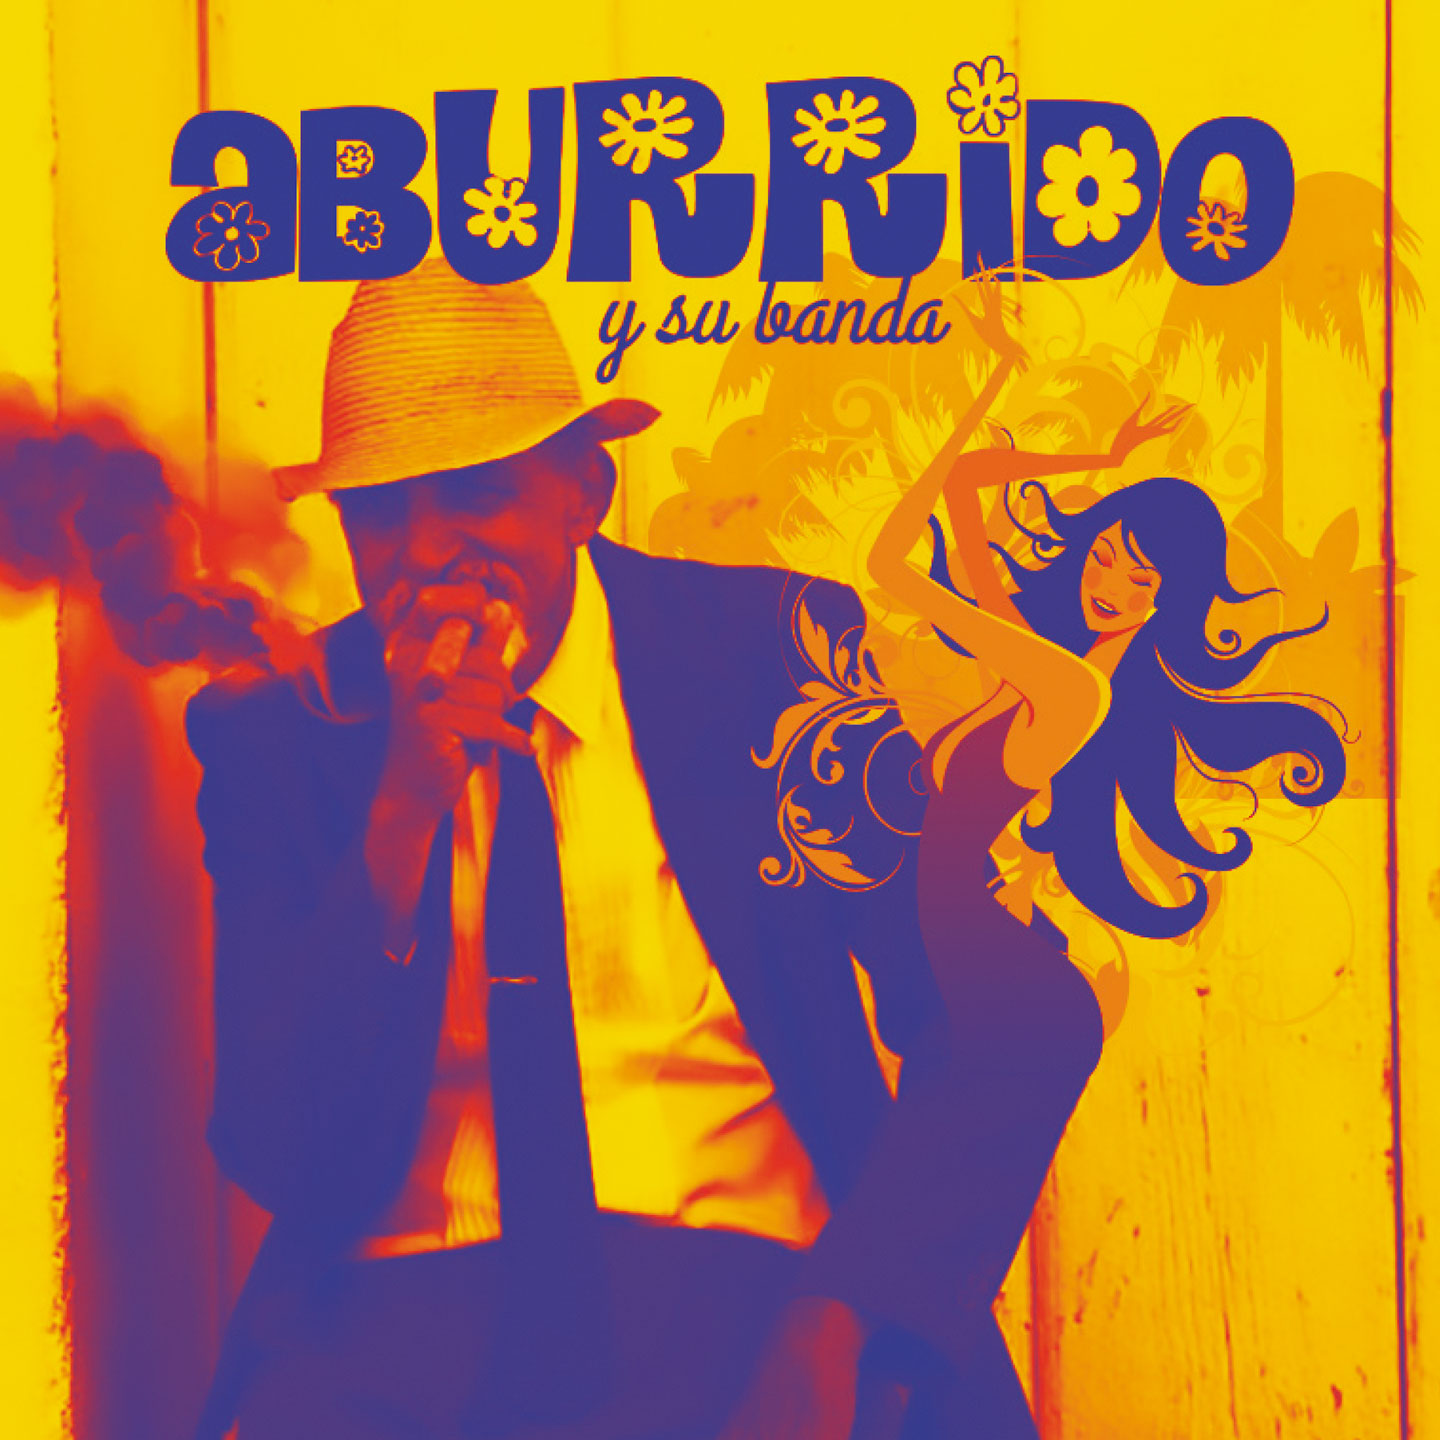 Dal 9 marzo in radio “ABURRIDO” il singolo di ABURRIDO y su Banda